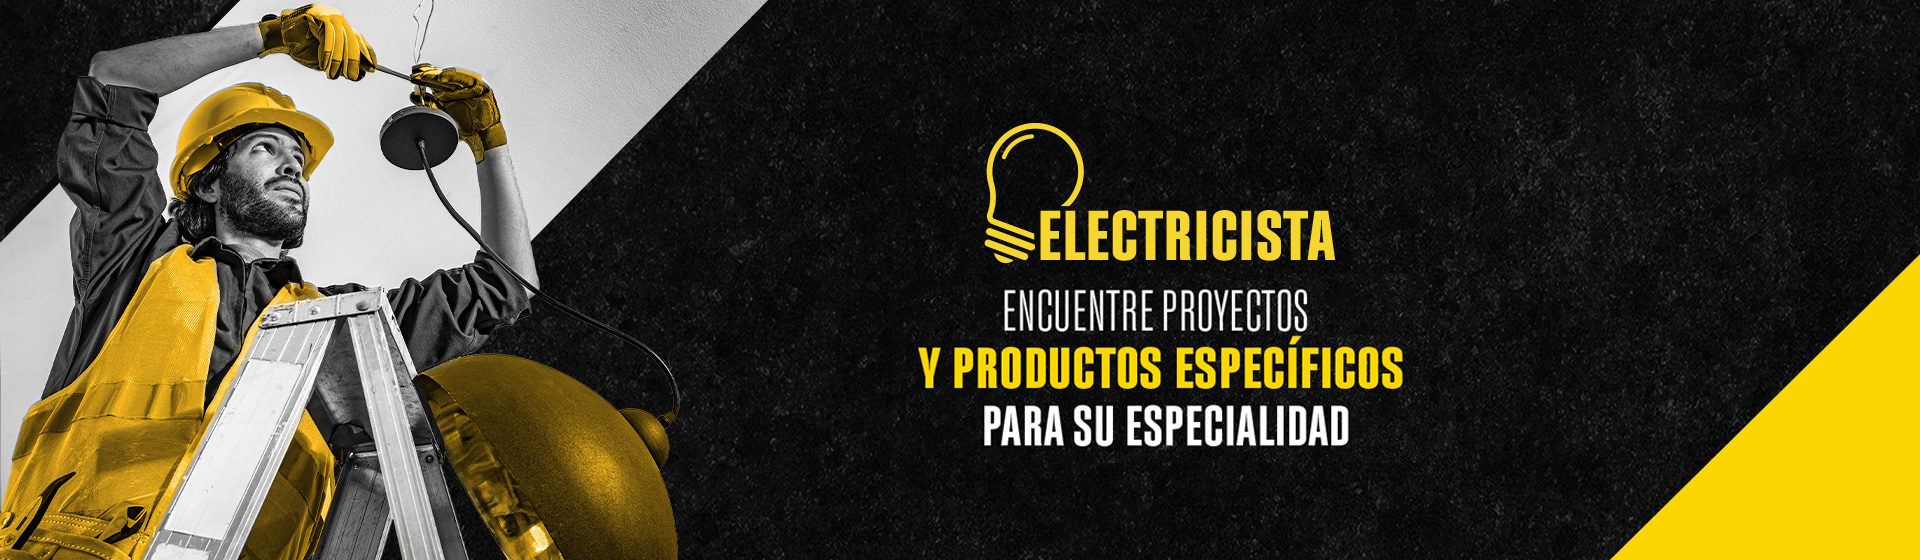 Electricista encuentre proyectos y productos específicos para su especialidad